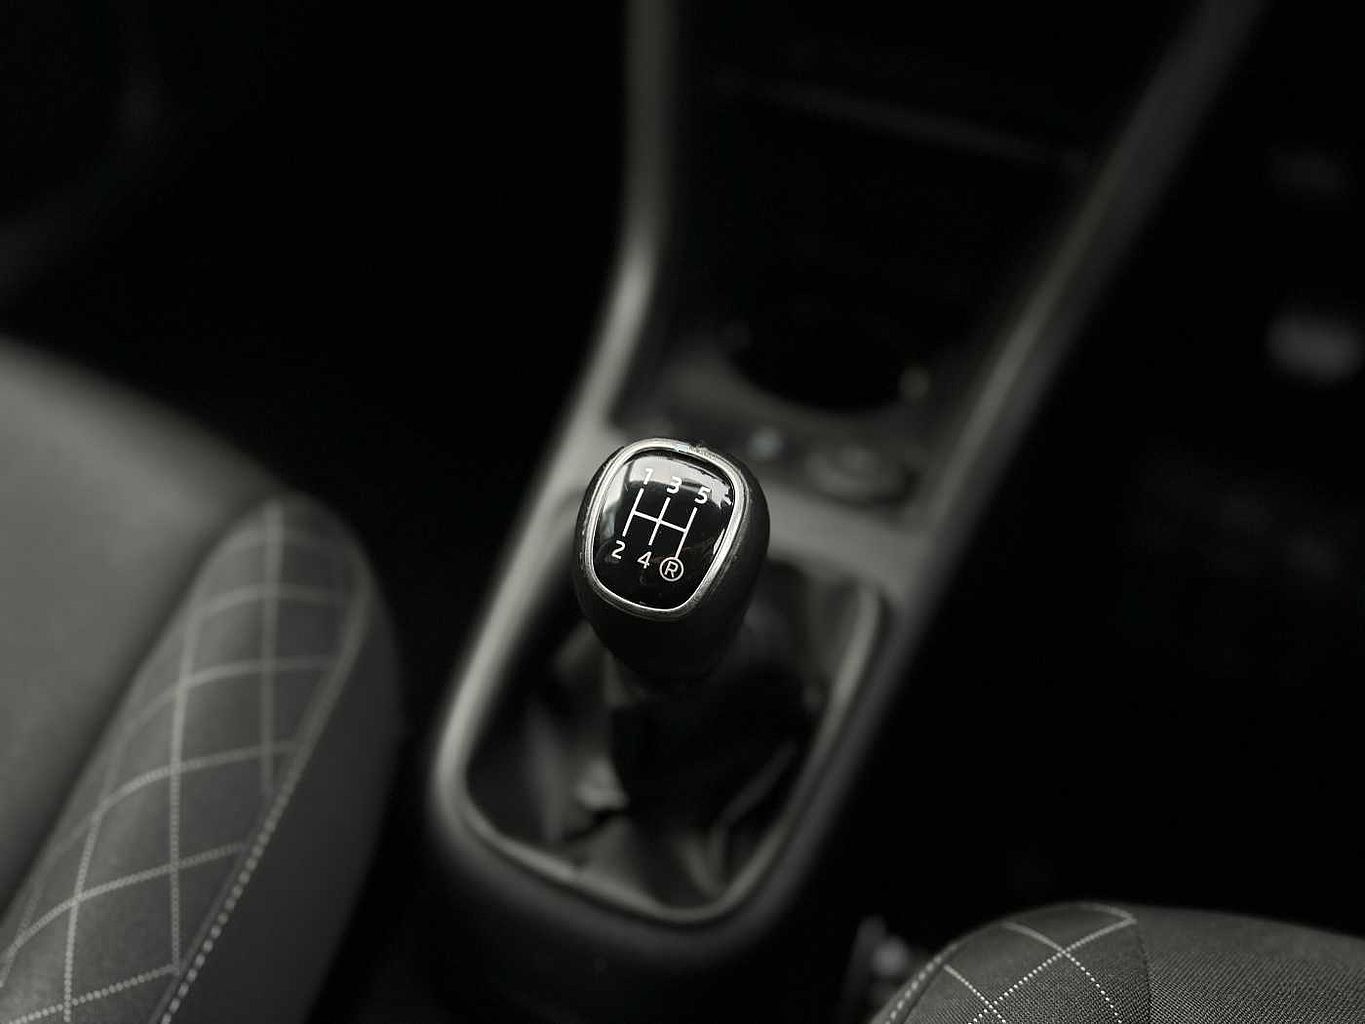 SKODA Citigo 1.0 MPI (75PS) SE L GreenTech Hatchback 5Dr